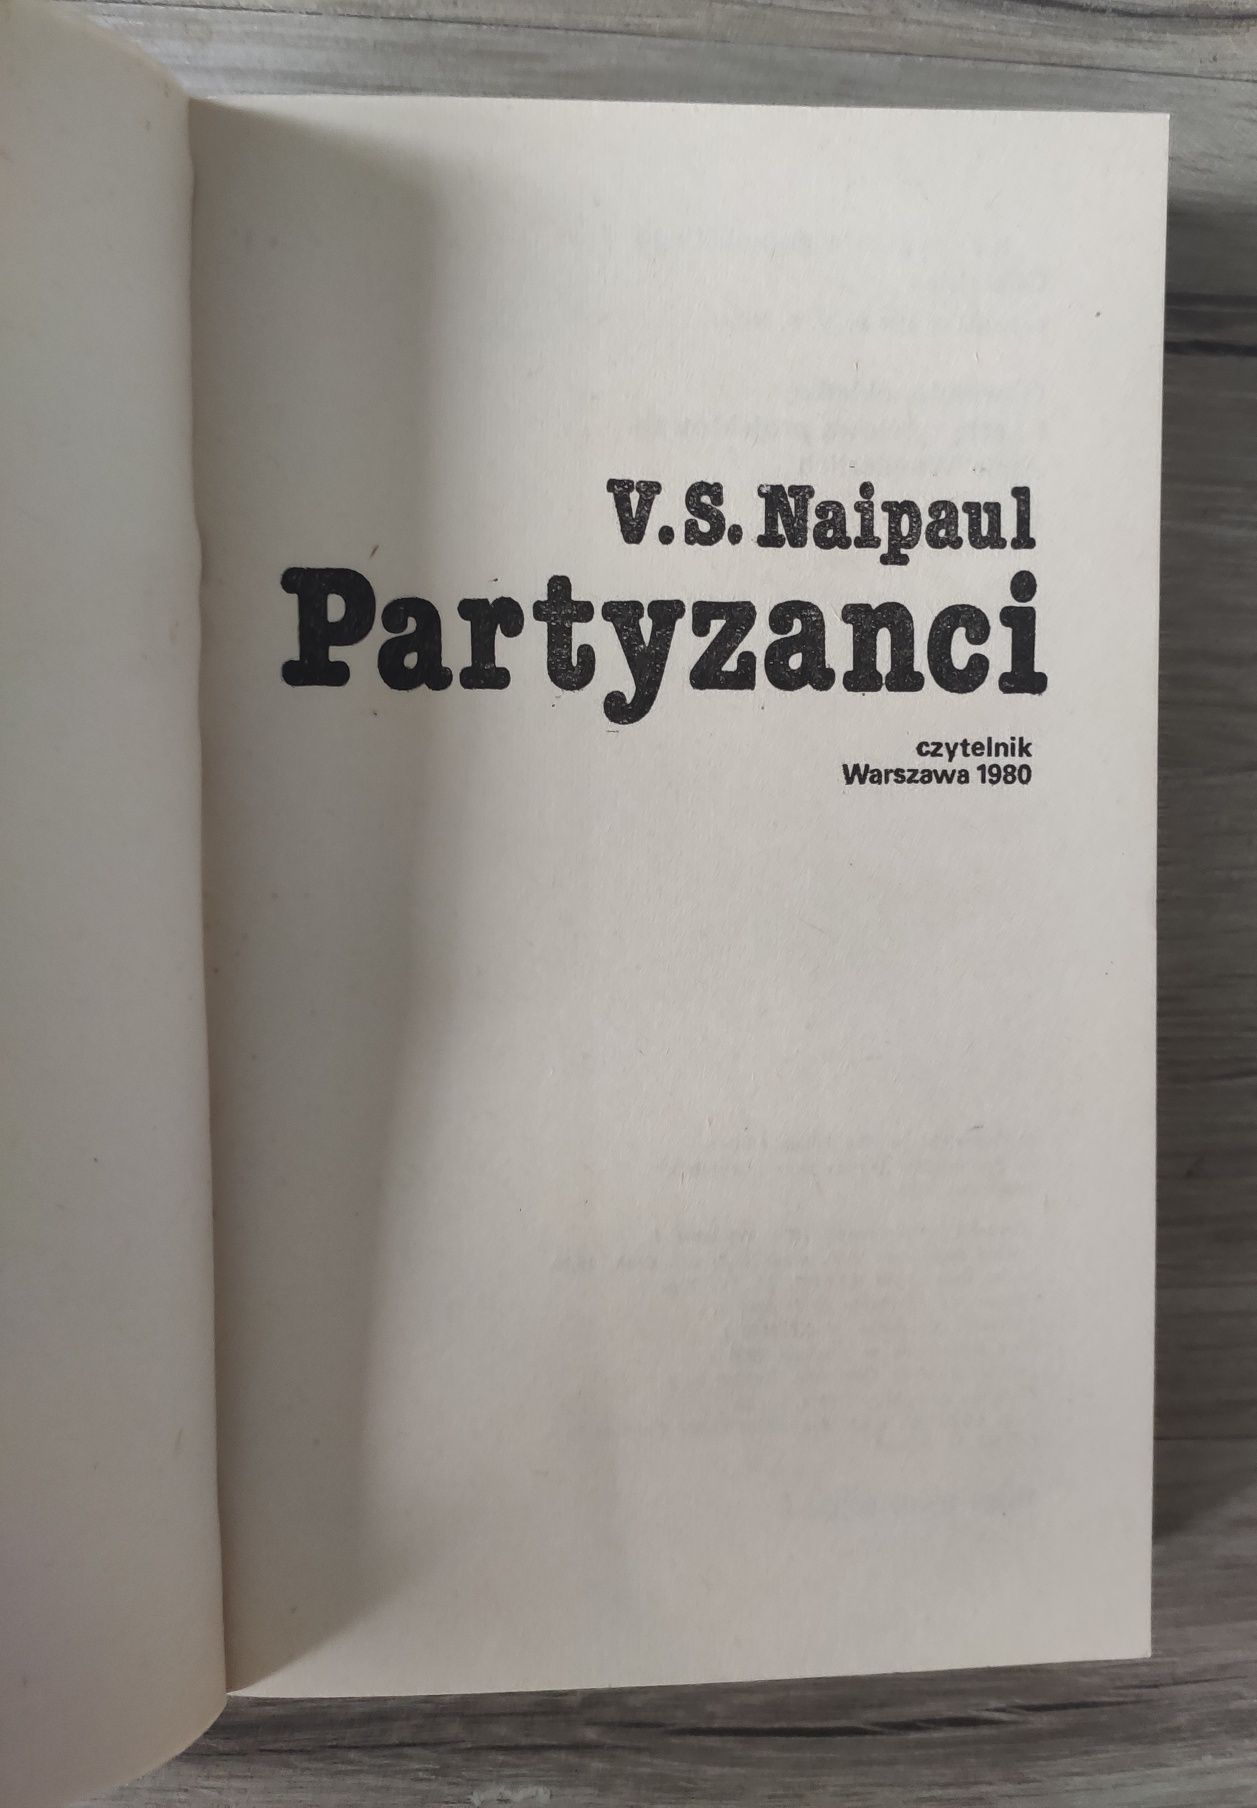 Partyzanci V.S. Naipaul